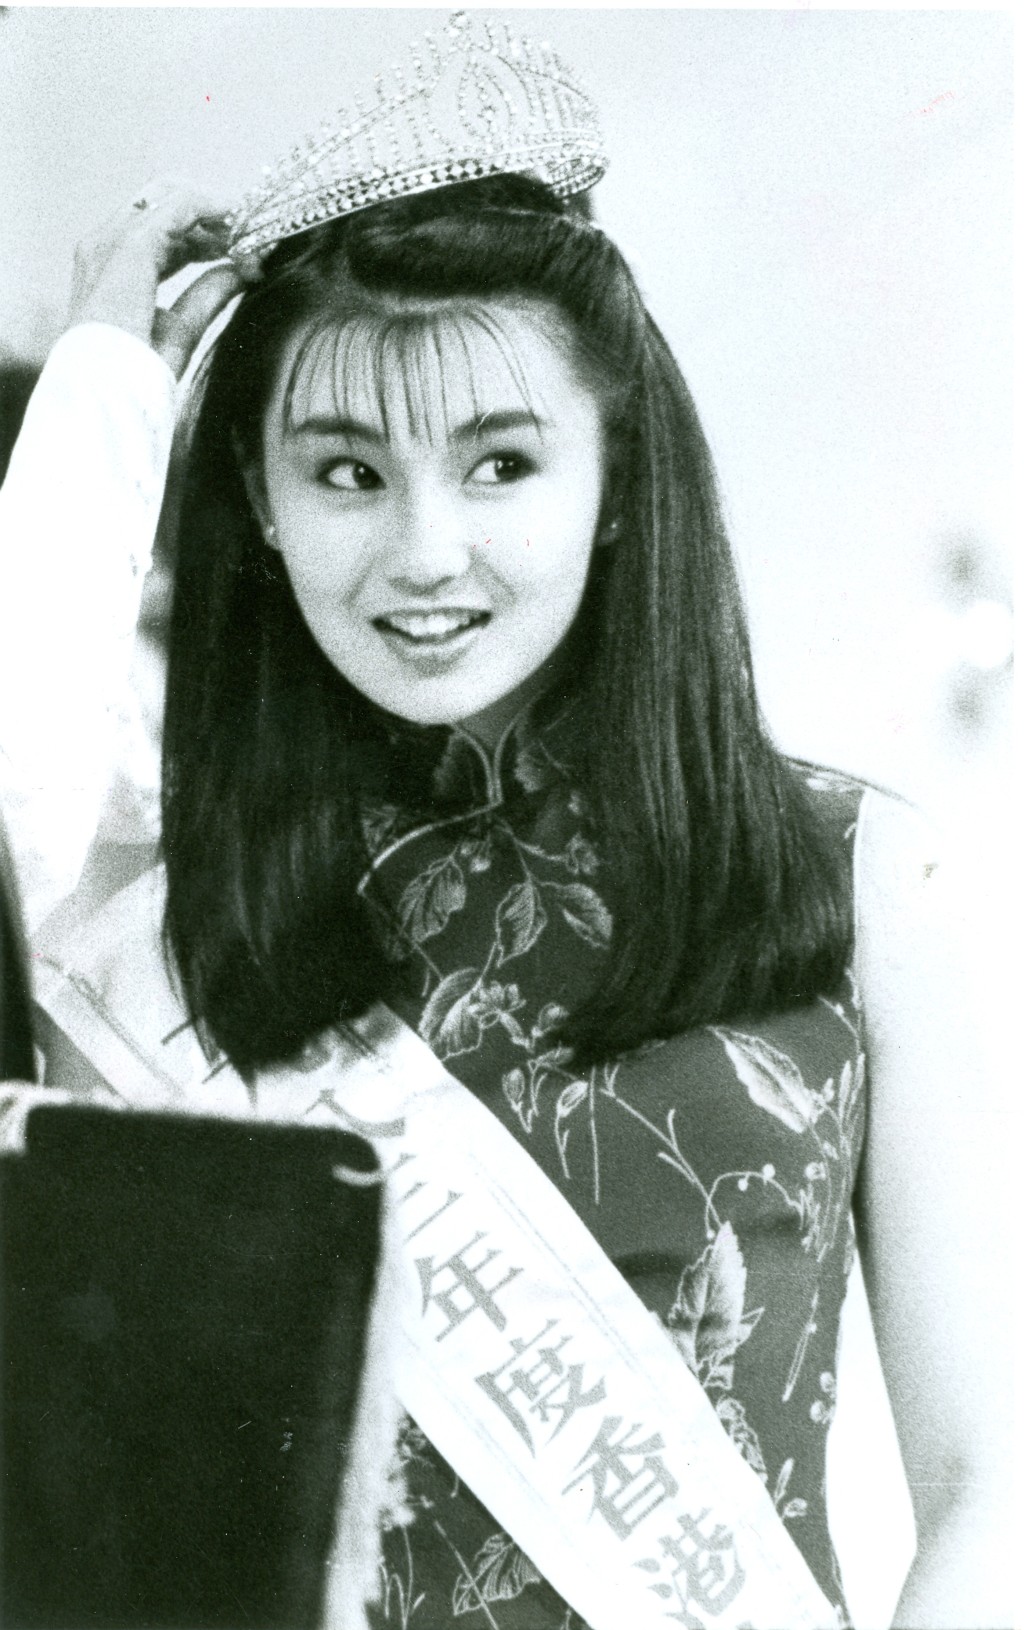 张曼玉在1982年从英国返港参加港姐并获得亚军及最上镜小姐奖，其后加入TVB做艺员，接着转战拍电影，星运相当亨通。